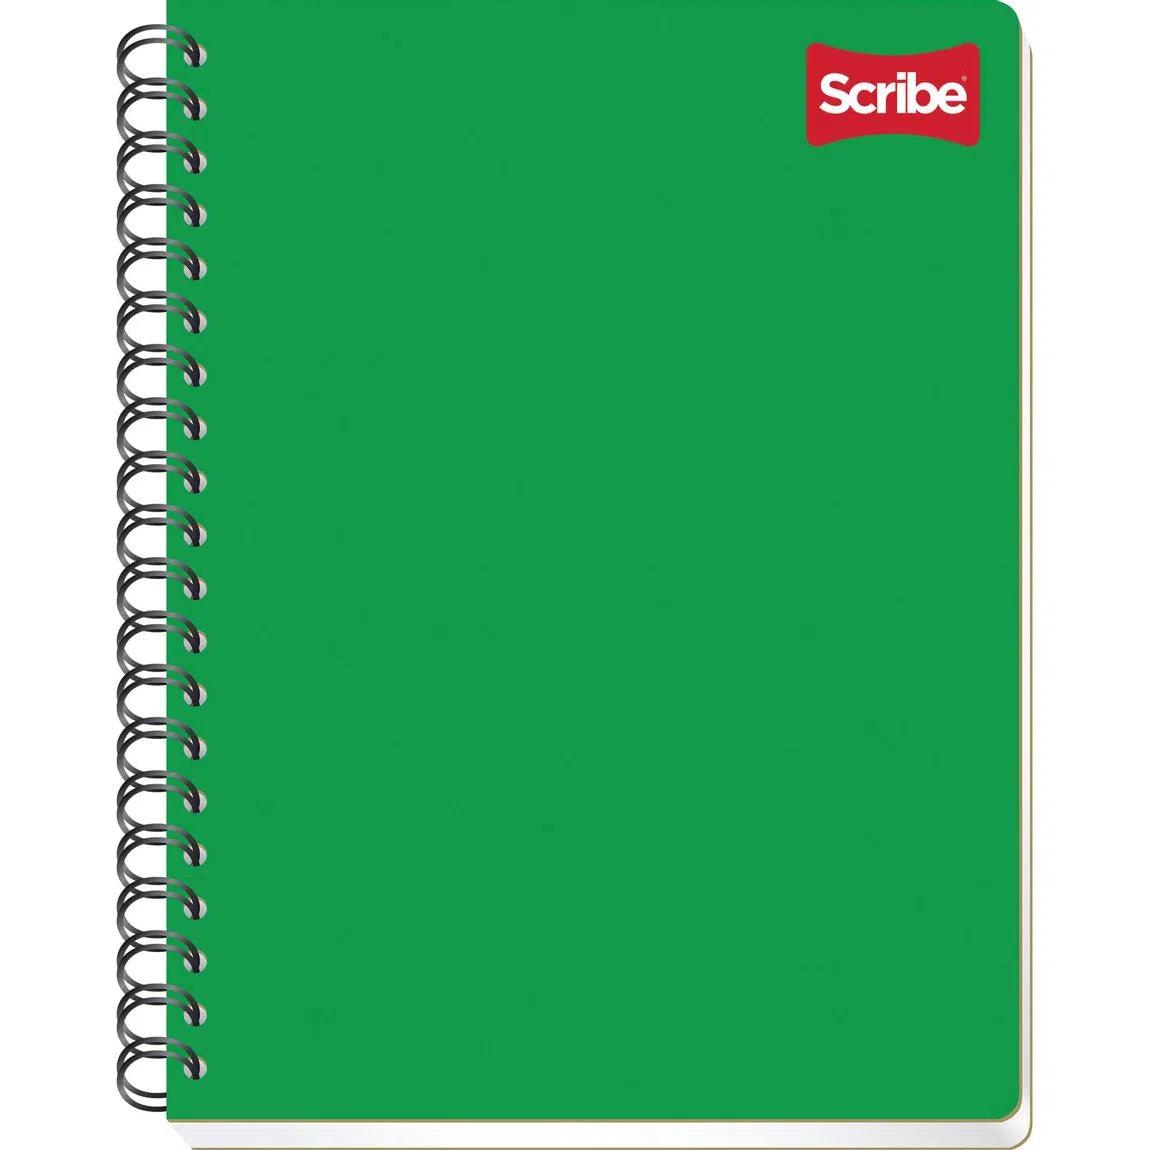 Cuaderno profesional Scribe clásico raya S2900 - Colmenero Shop